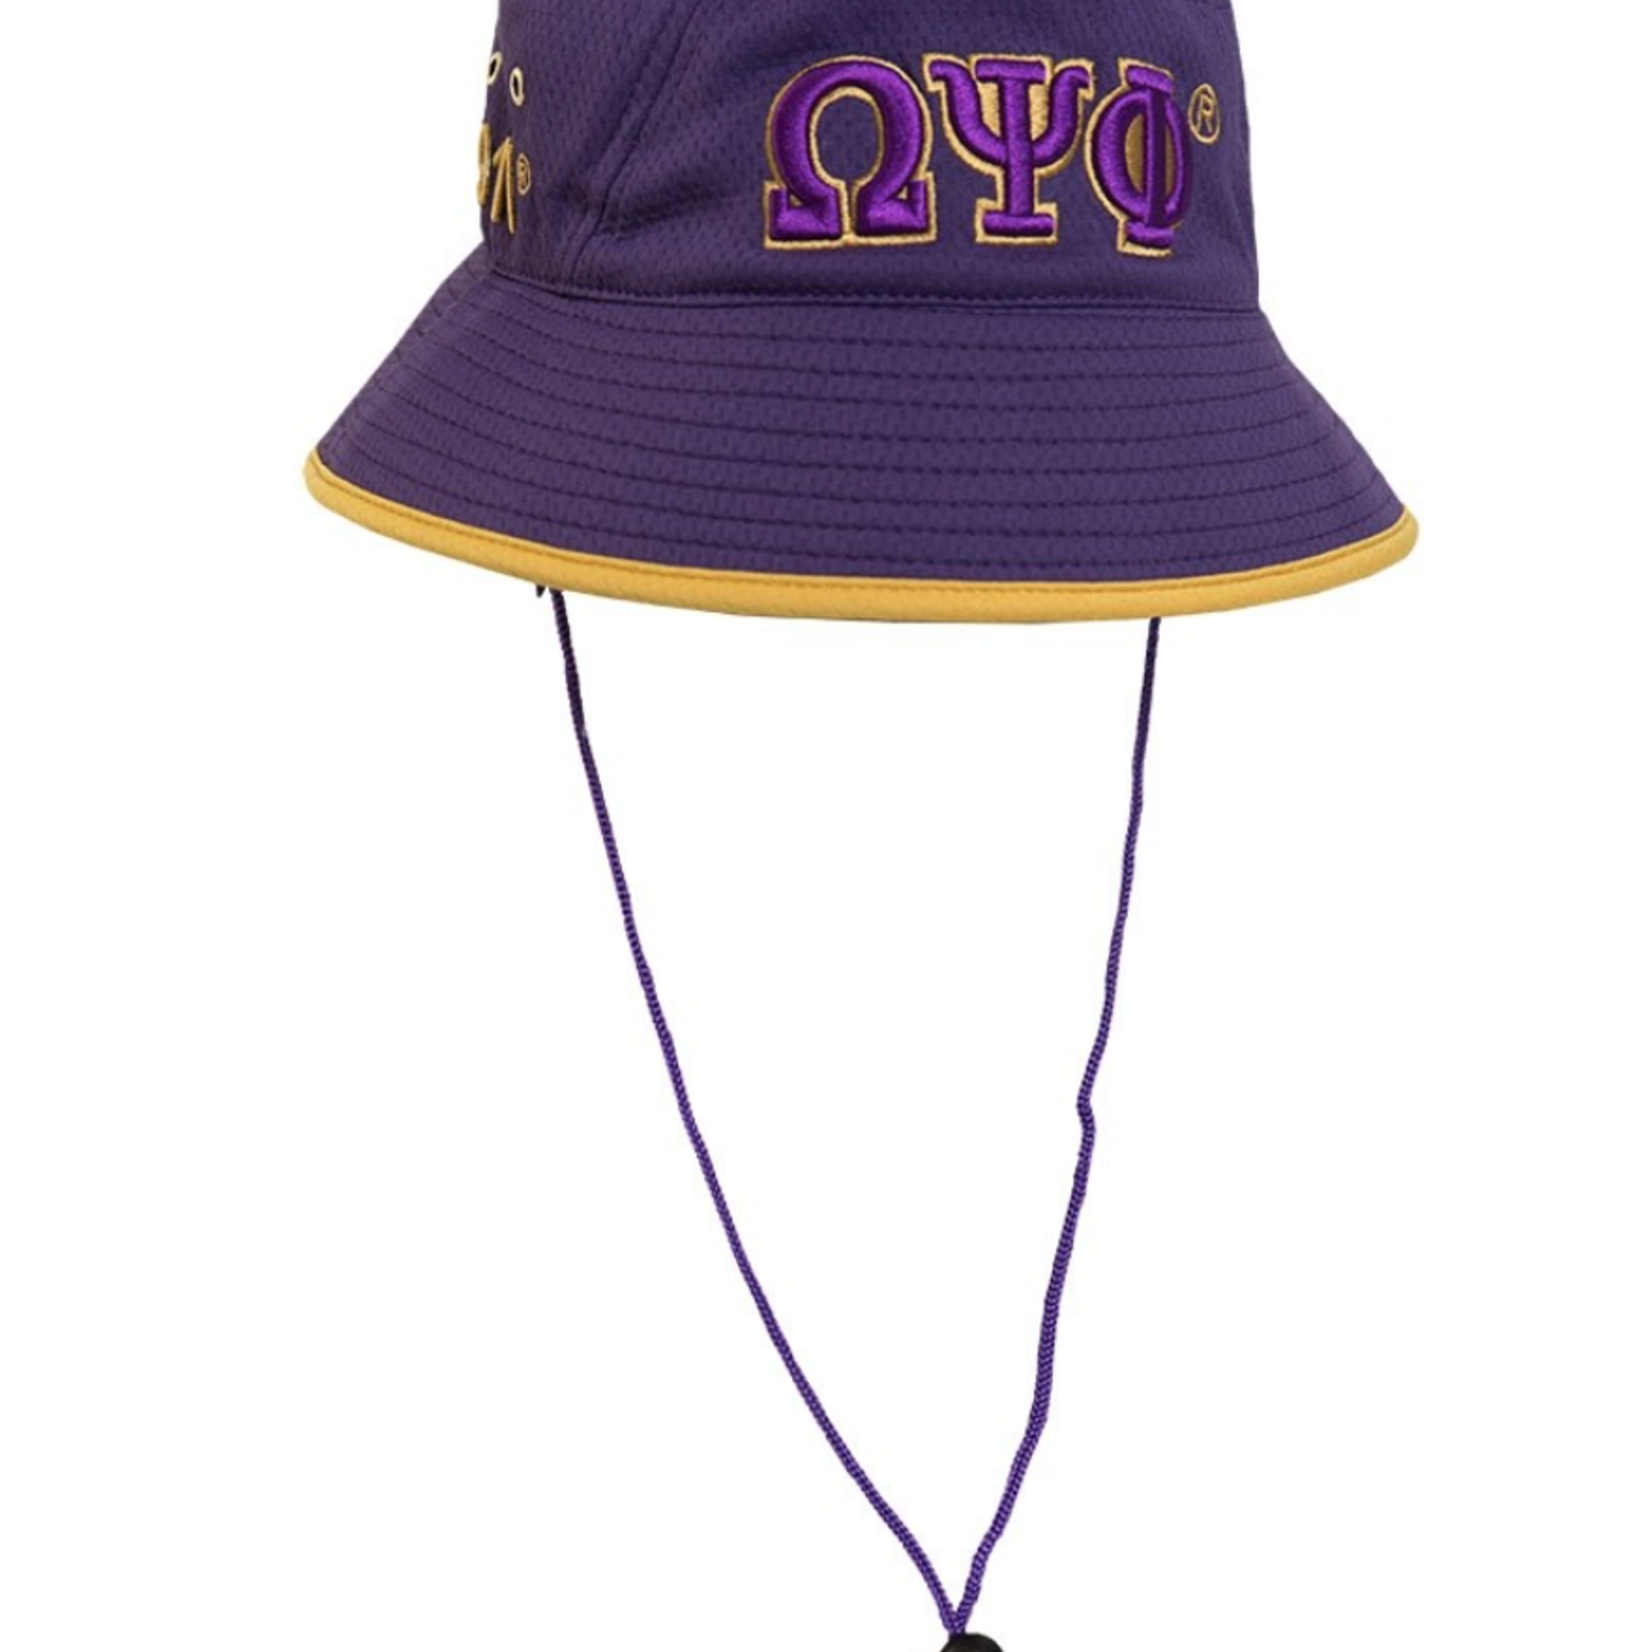 ΩΨΦ OPP Embroidered Bucket  Hat with Drawstring